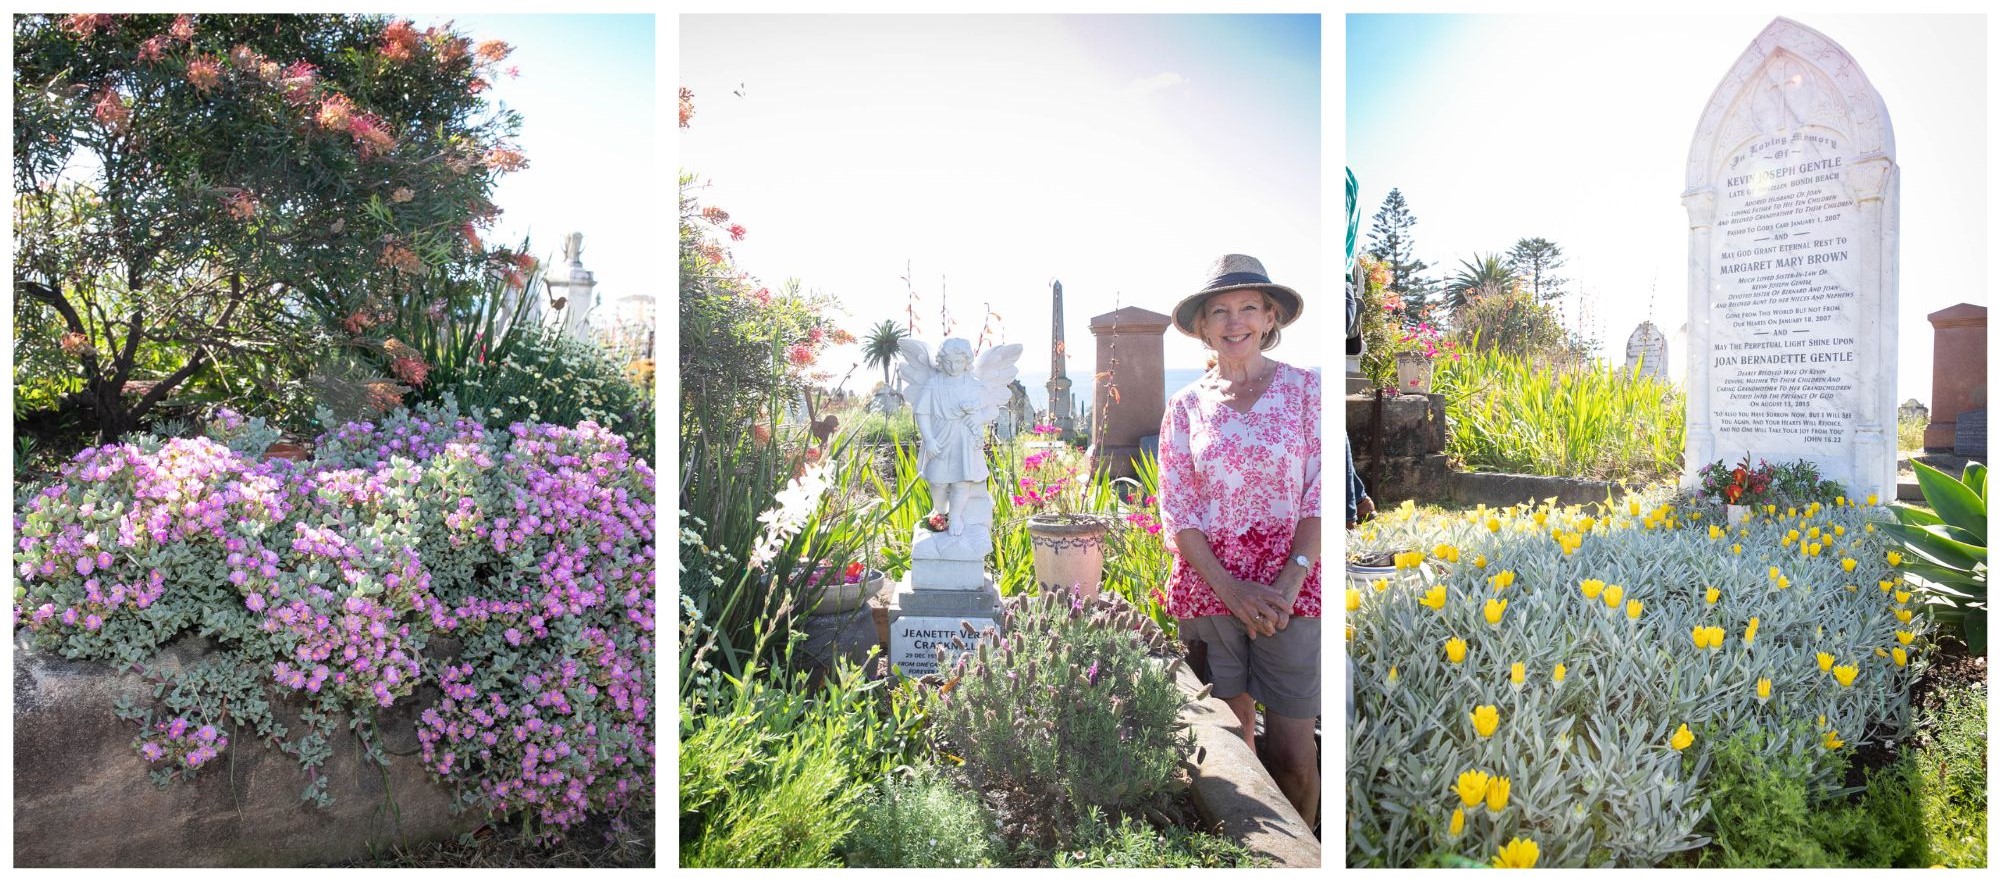 Graves wiht flowering shrubs and volunteer gardener Carrie